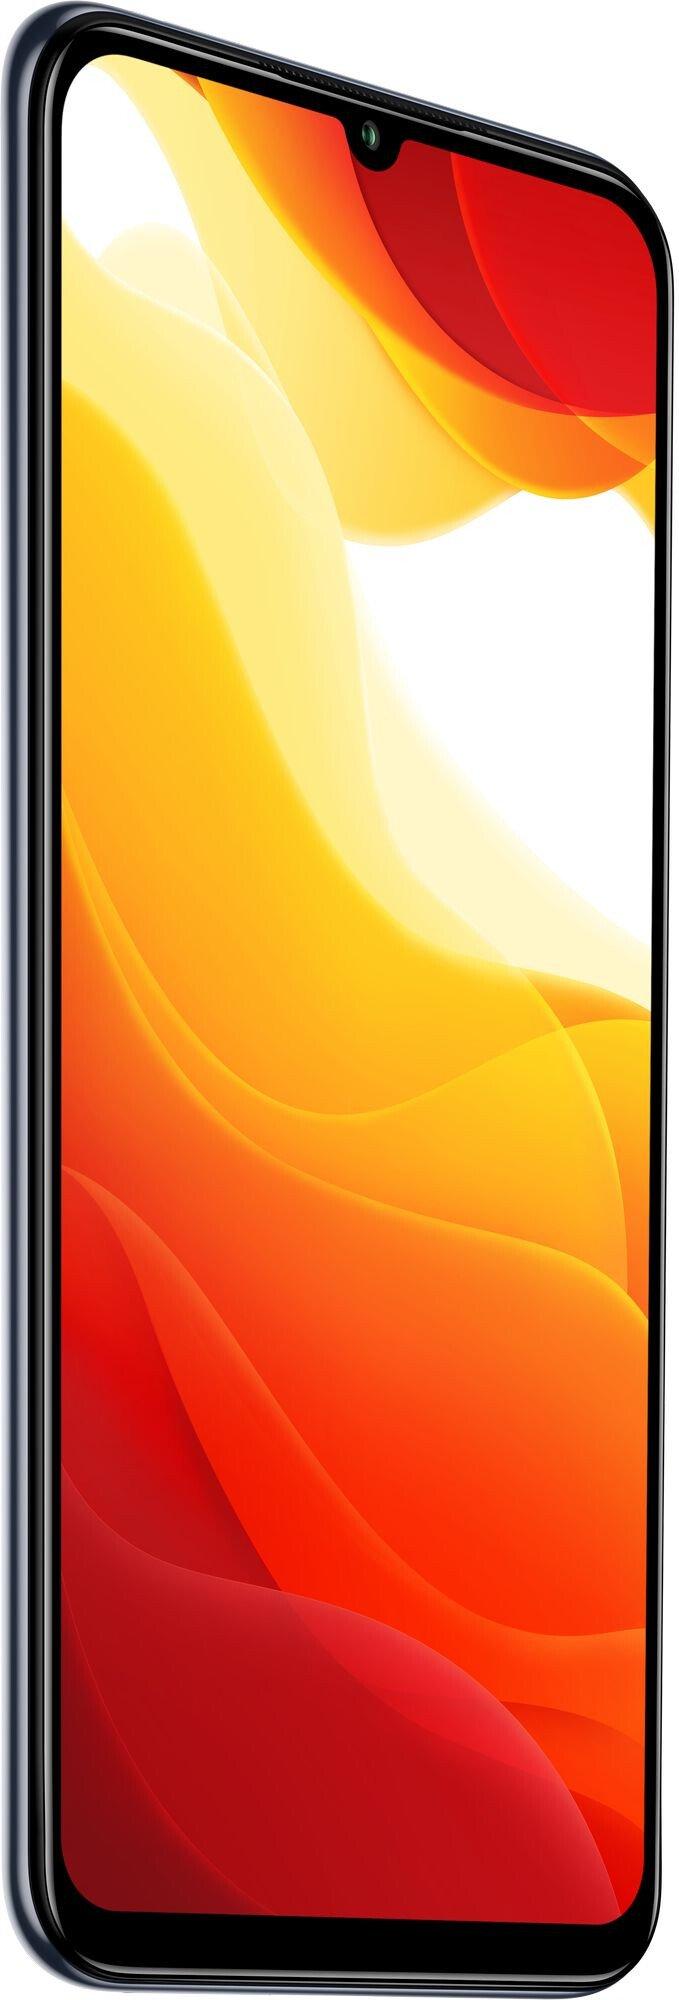 Цена Смартфон Xiaomi Mi 10 Lite 5G 6/64Gb Cosmic Grey